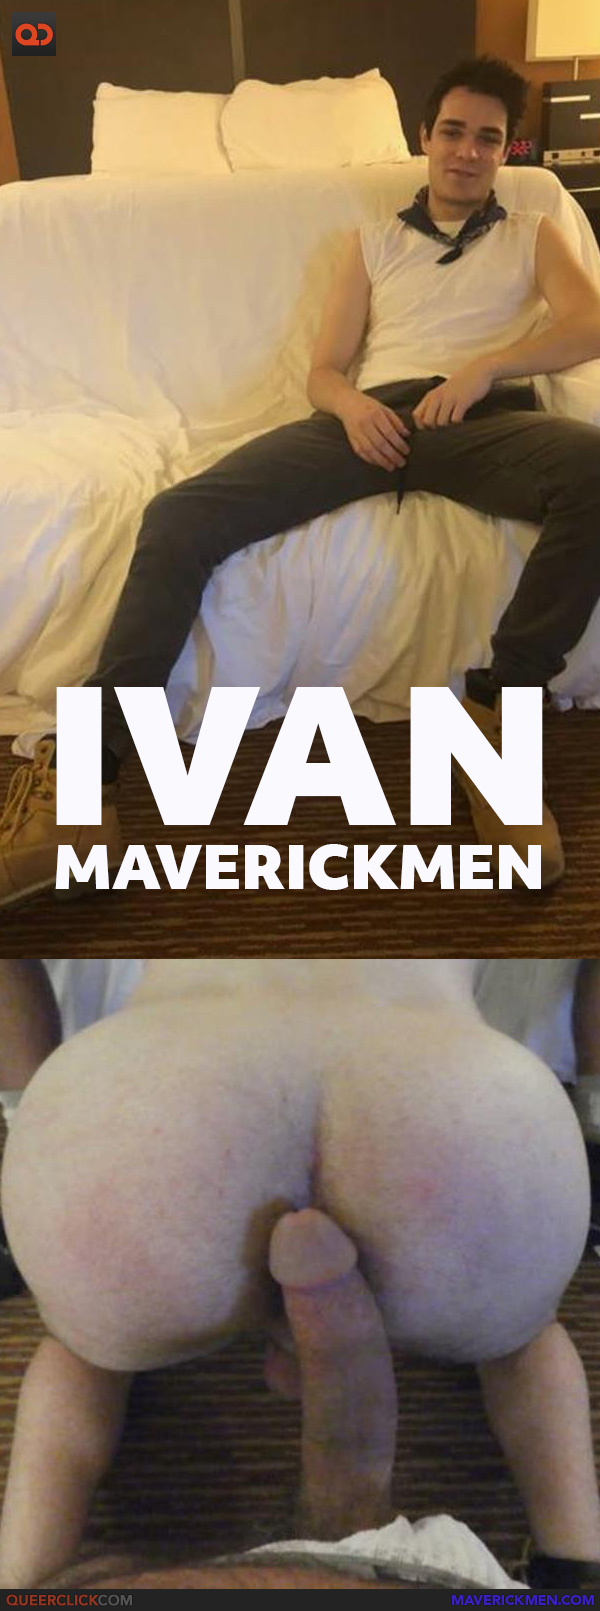 Maverick Men: Ivan